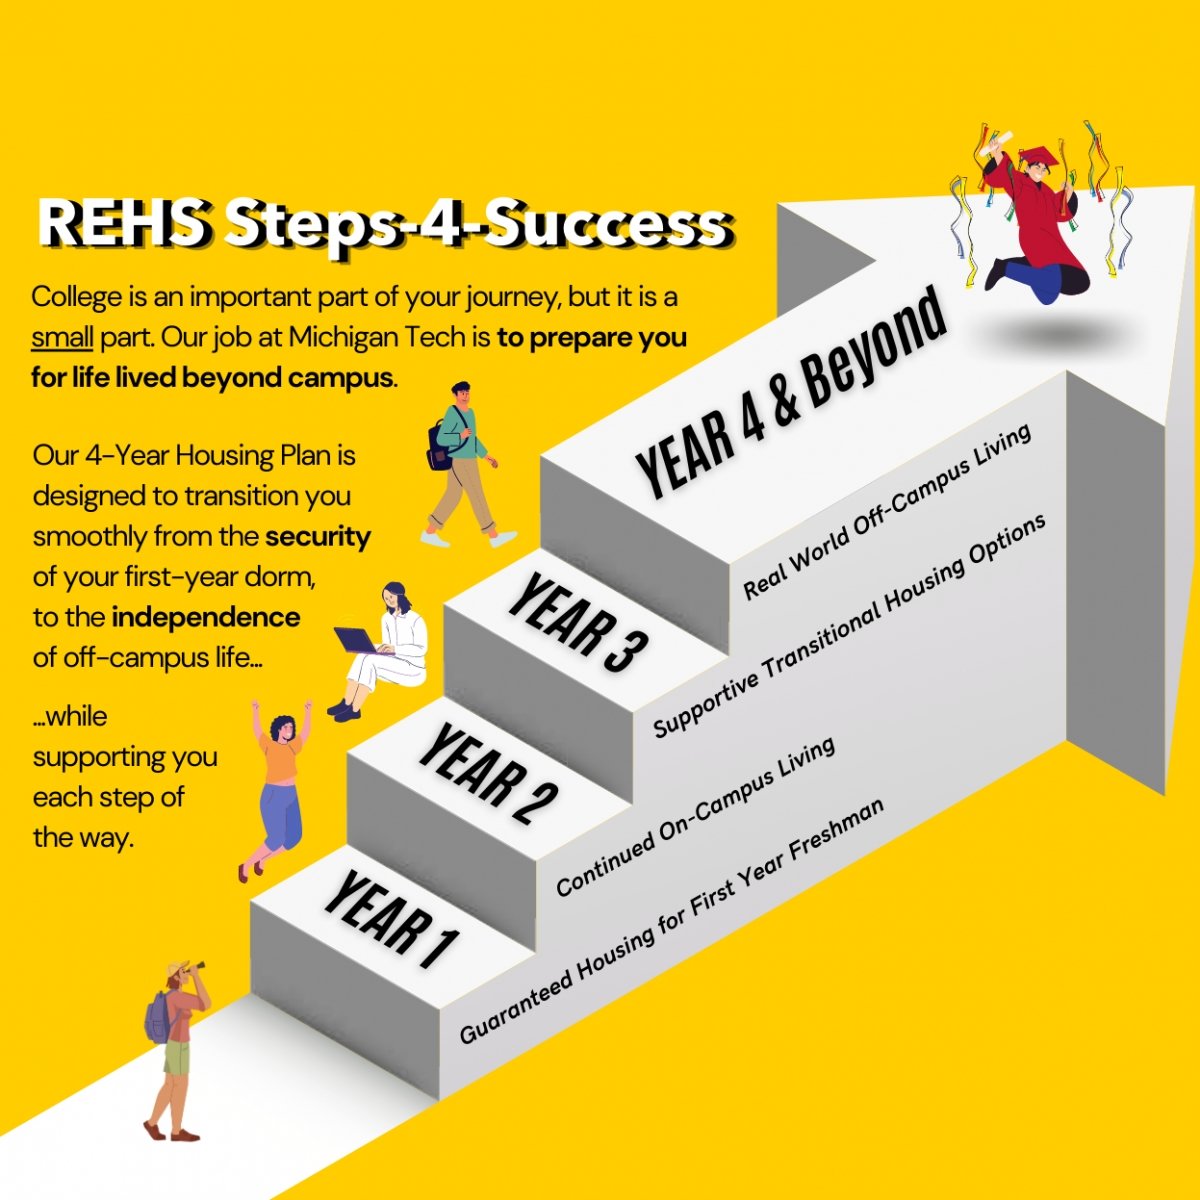 REHS Steps-4-Success